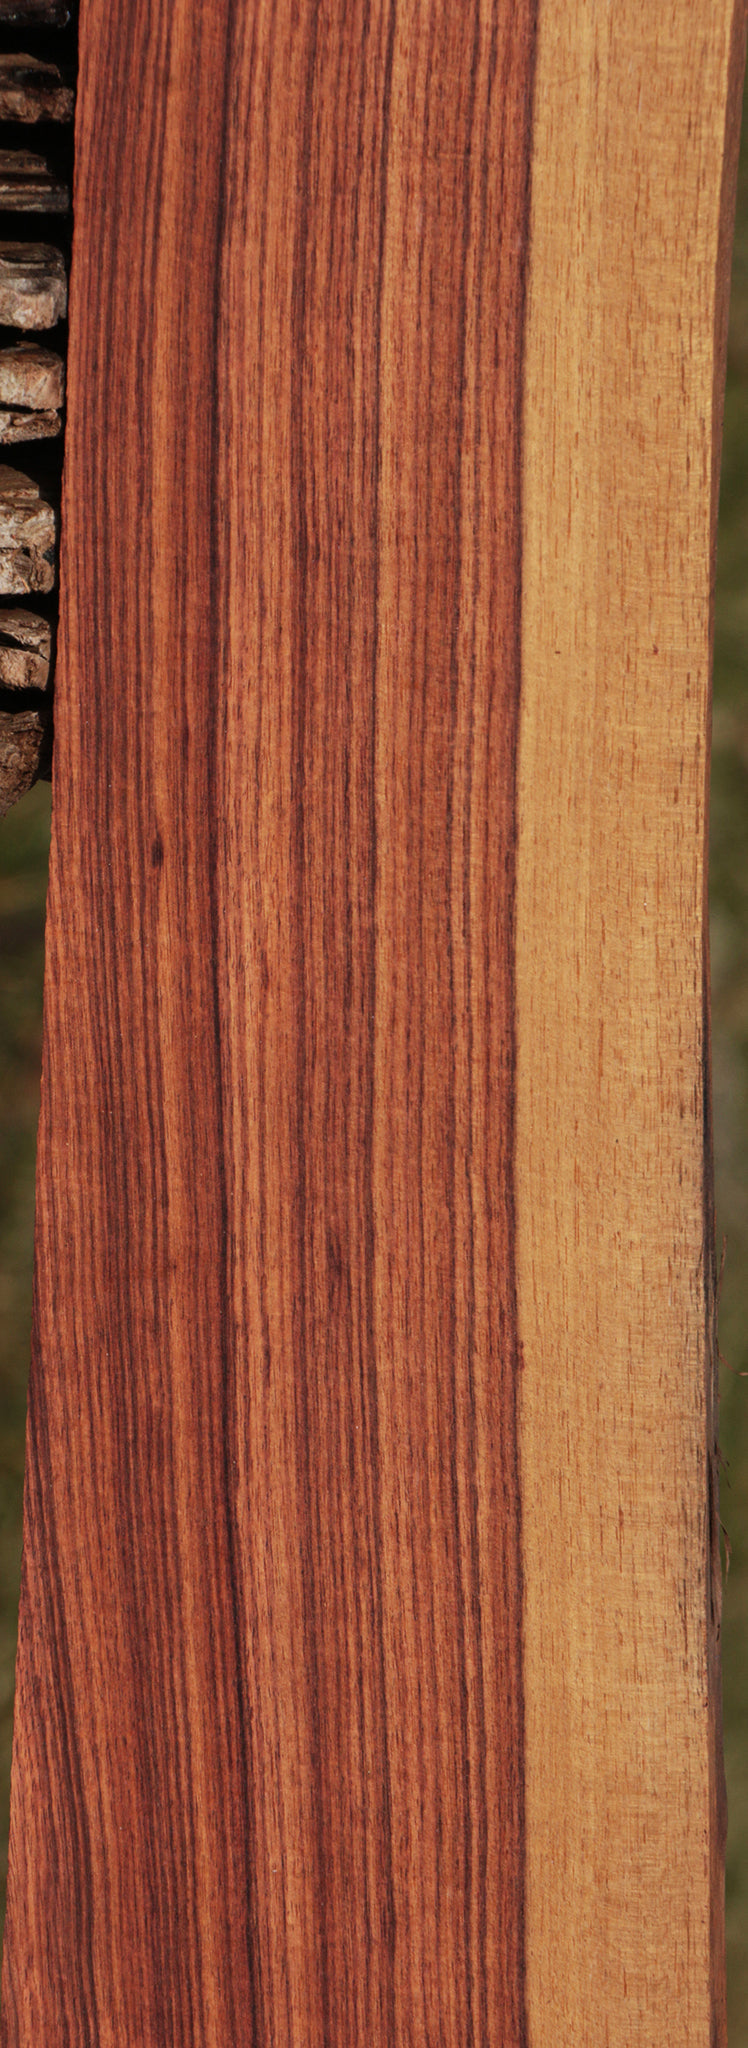 Kingwood Lumber